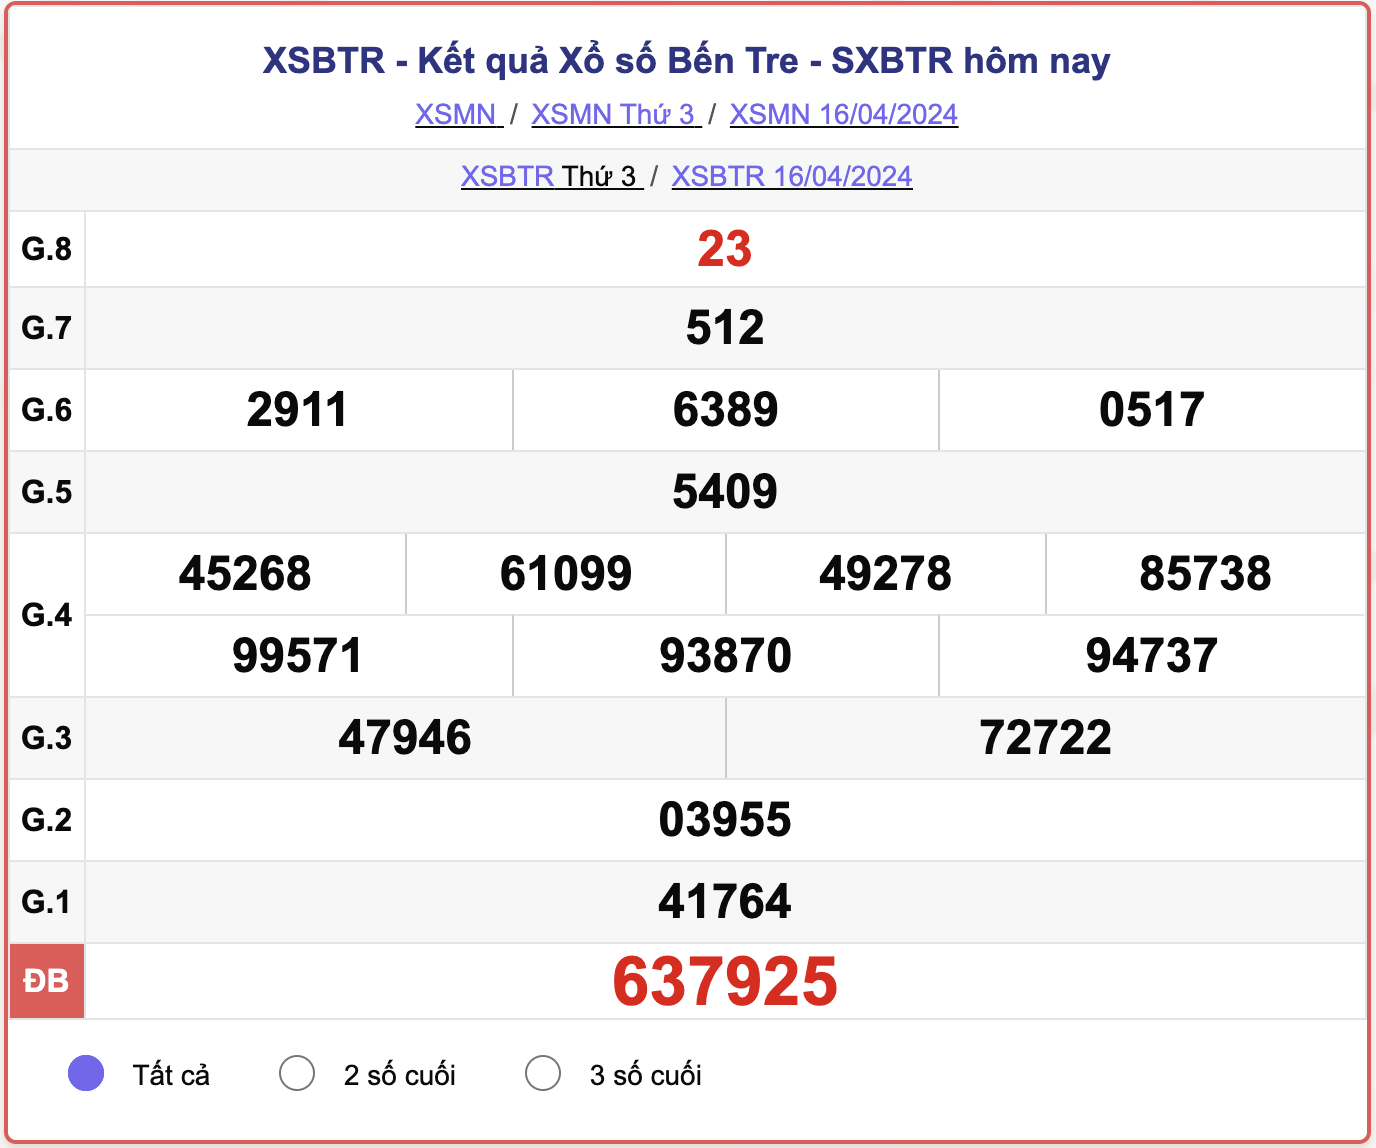 XSBTR thứ 3, kết quả xổ số Bến Tre ngày 16/4/2024.